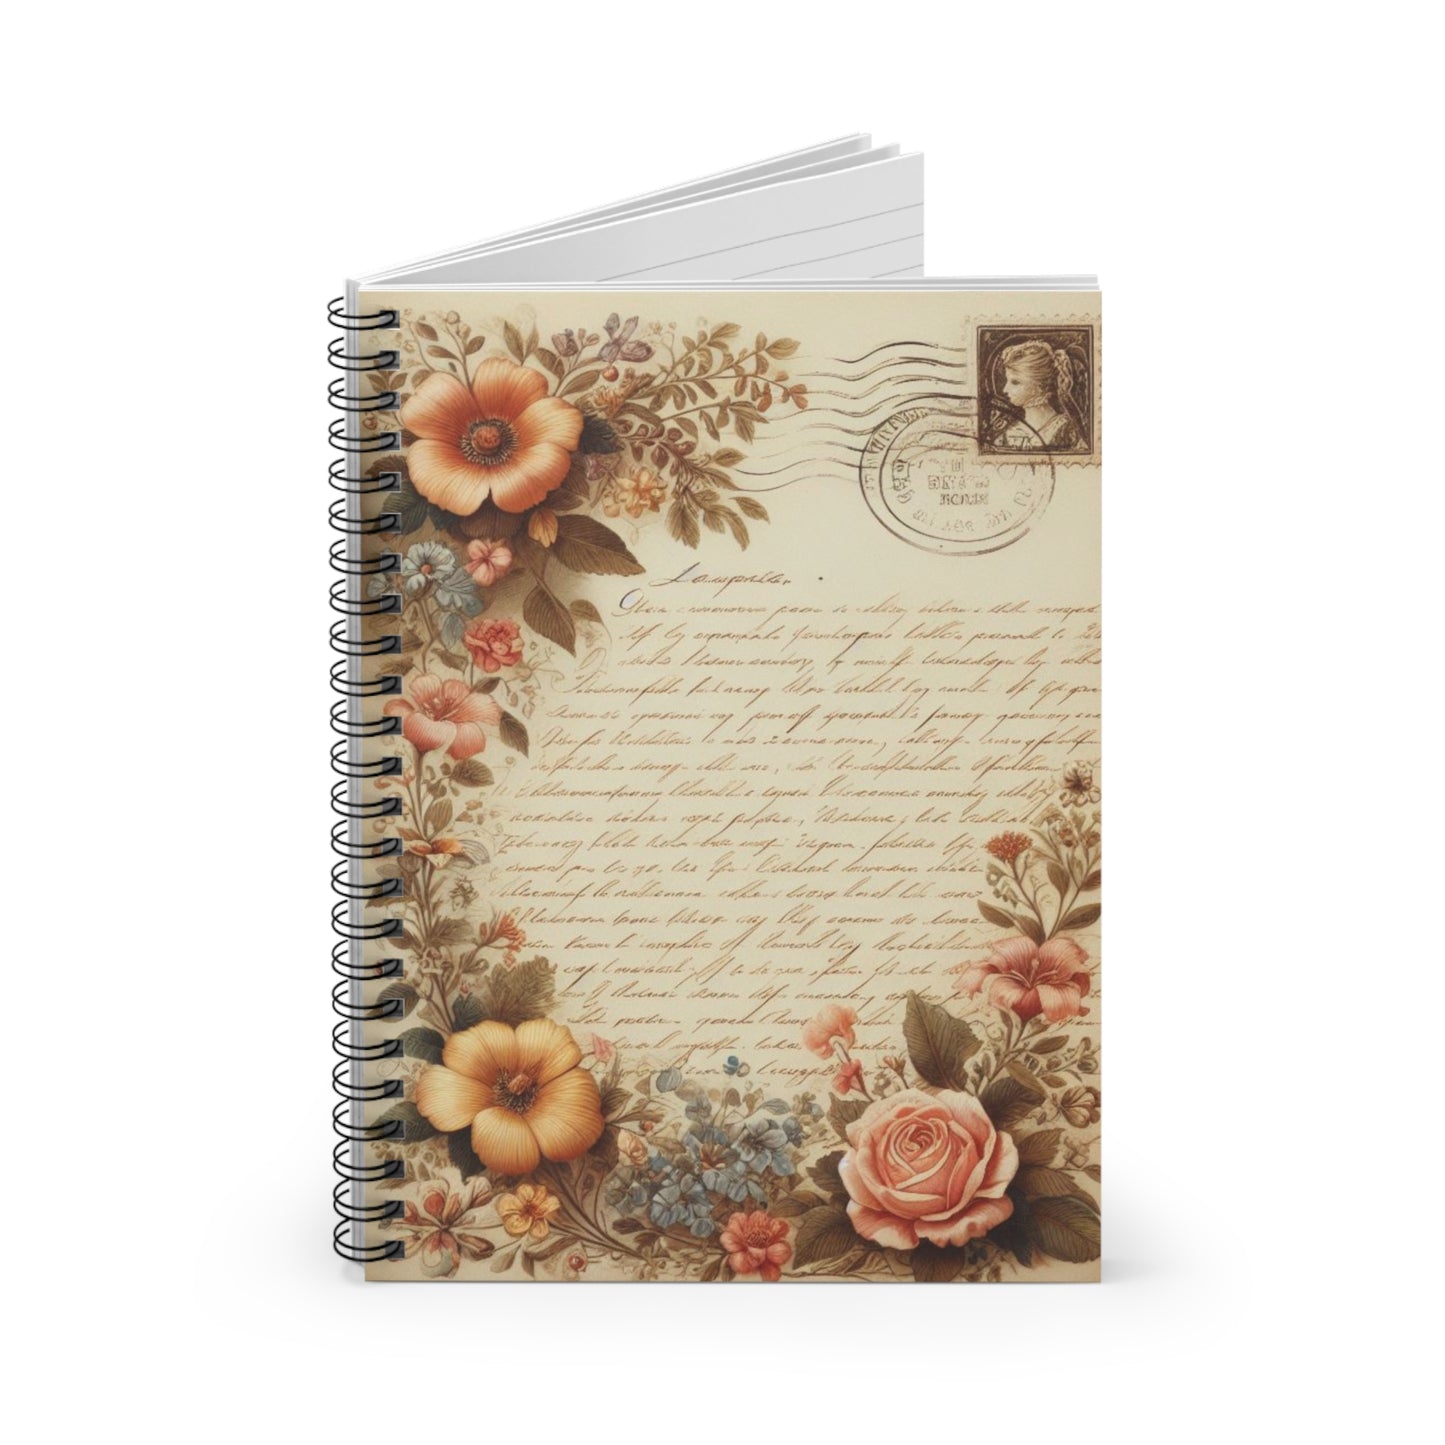 Floral Ephemera Letter Vintage Spiral Notebook